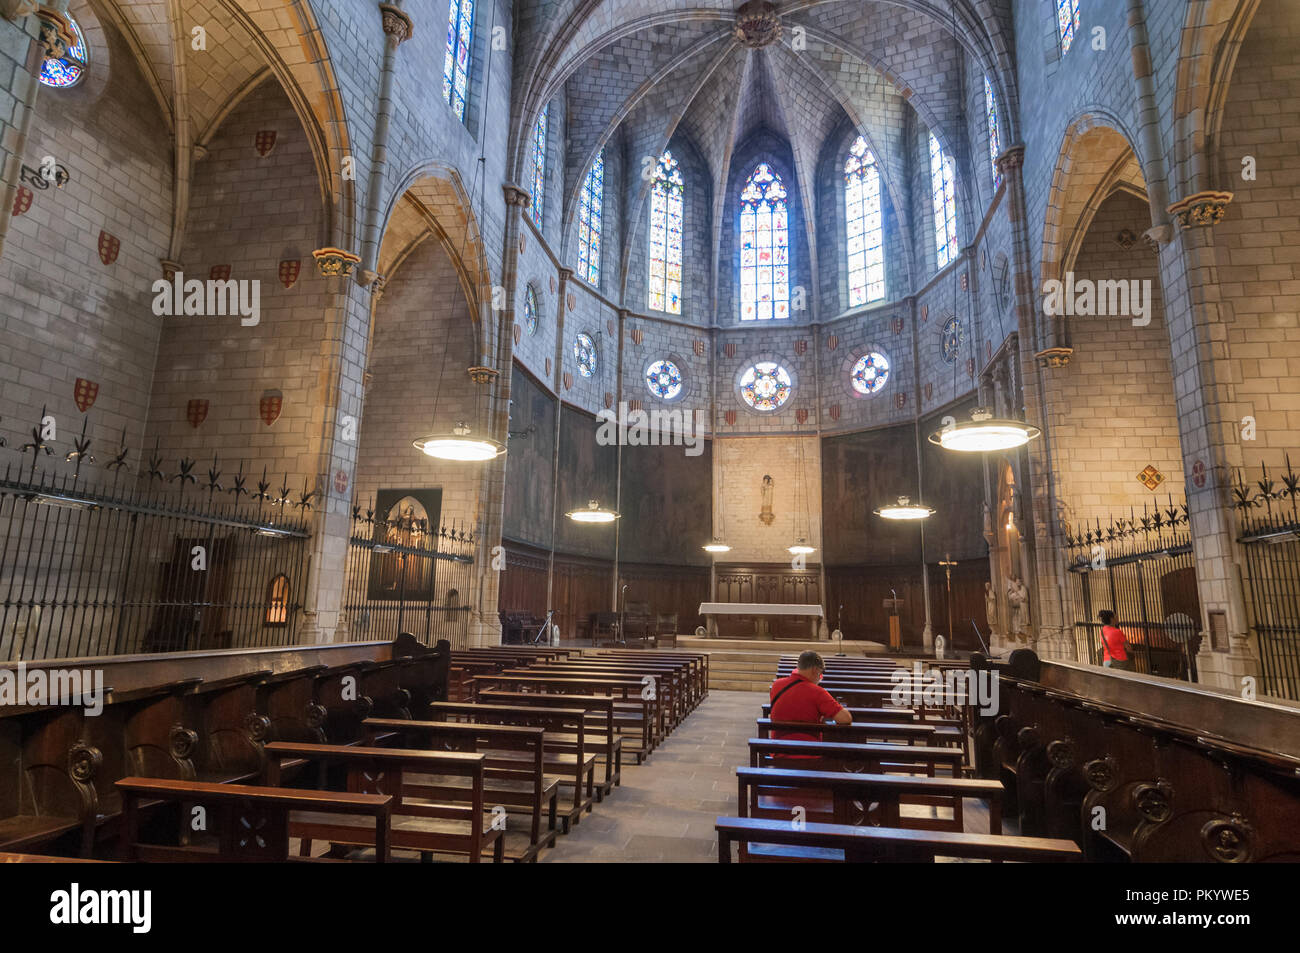 All'interno del Monastero di Pedralbes, il monastero di santa maria, Barcellona, in Catalogna, Spagna Foto Stock